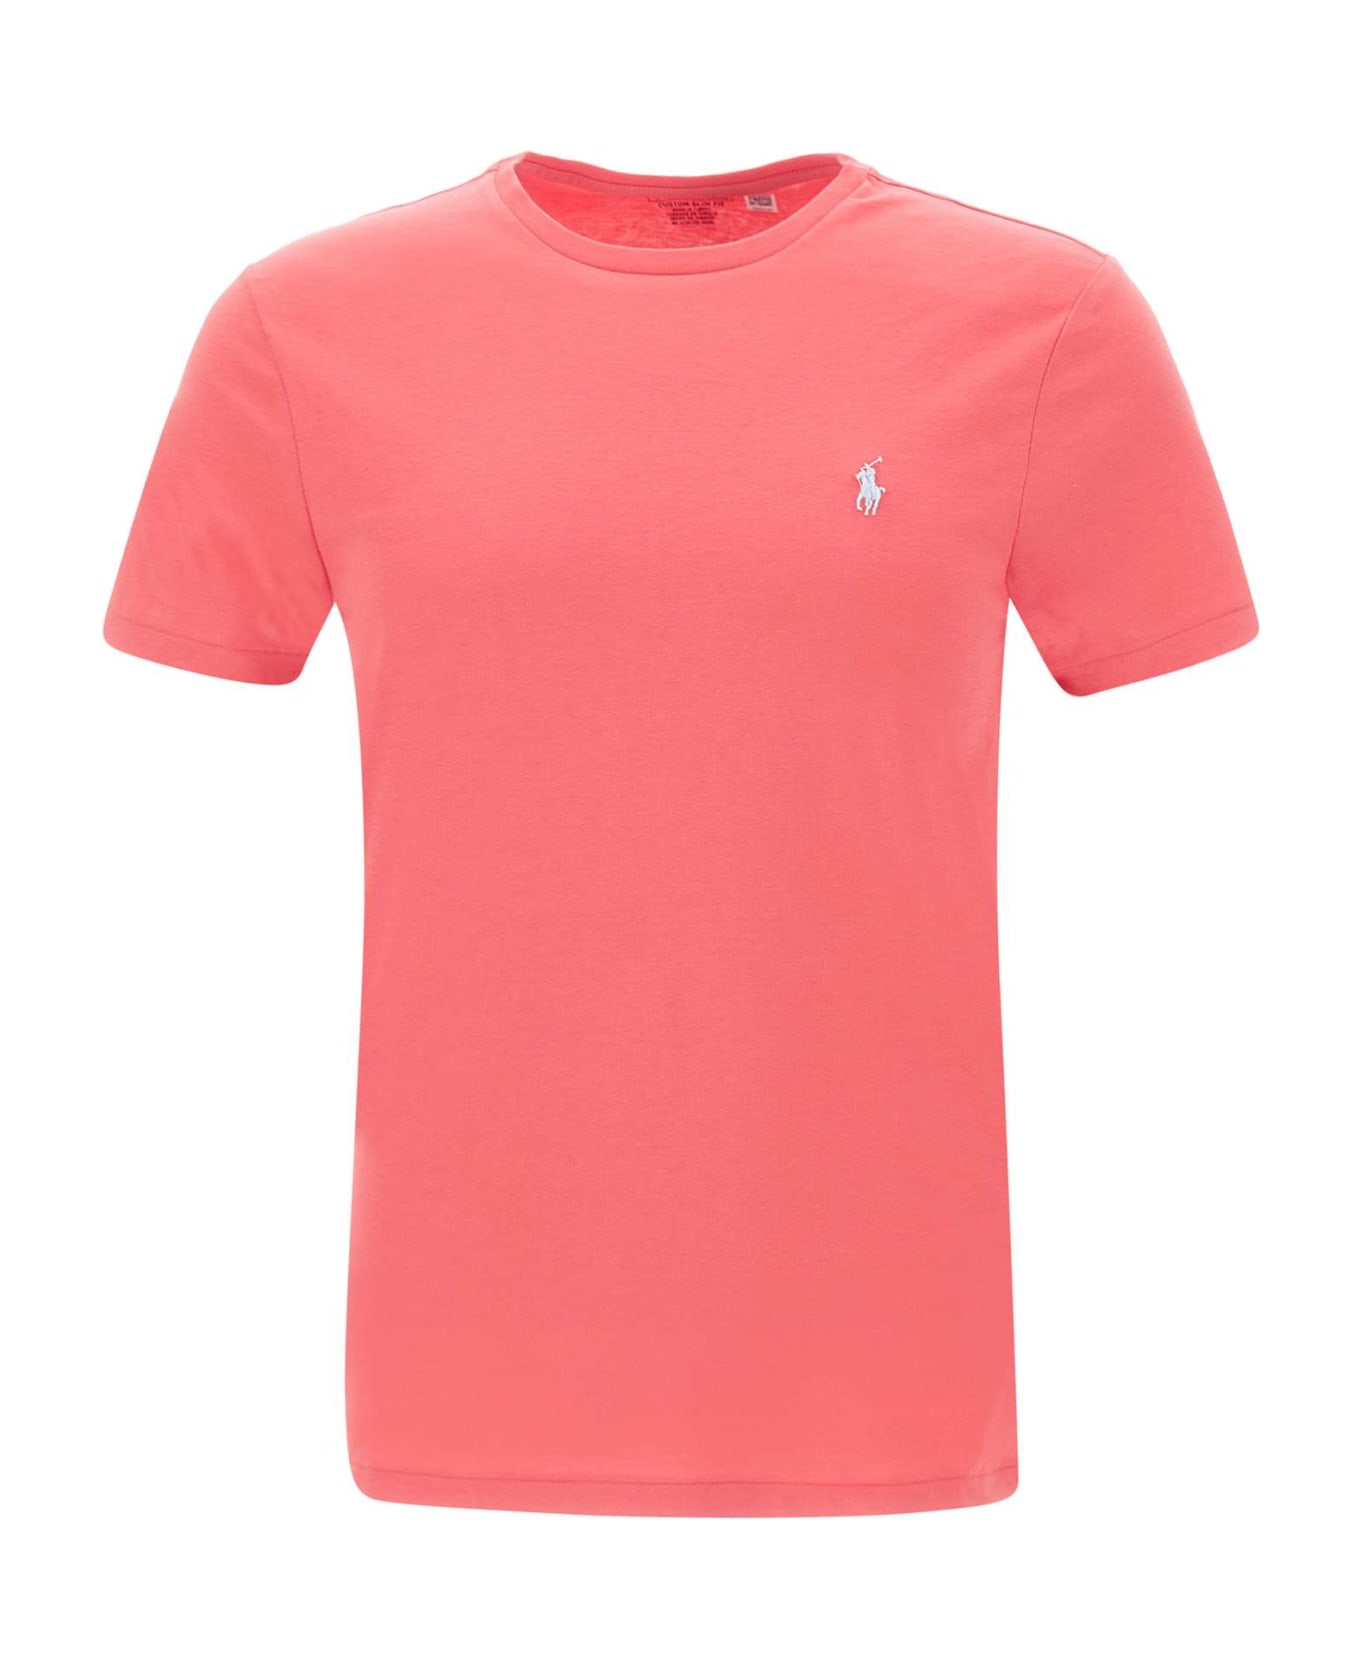 Polo Ralph Lauren 'classics' Cotton T-shirt - Red